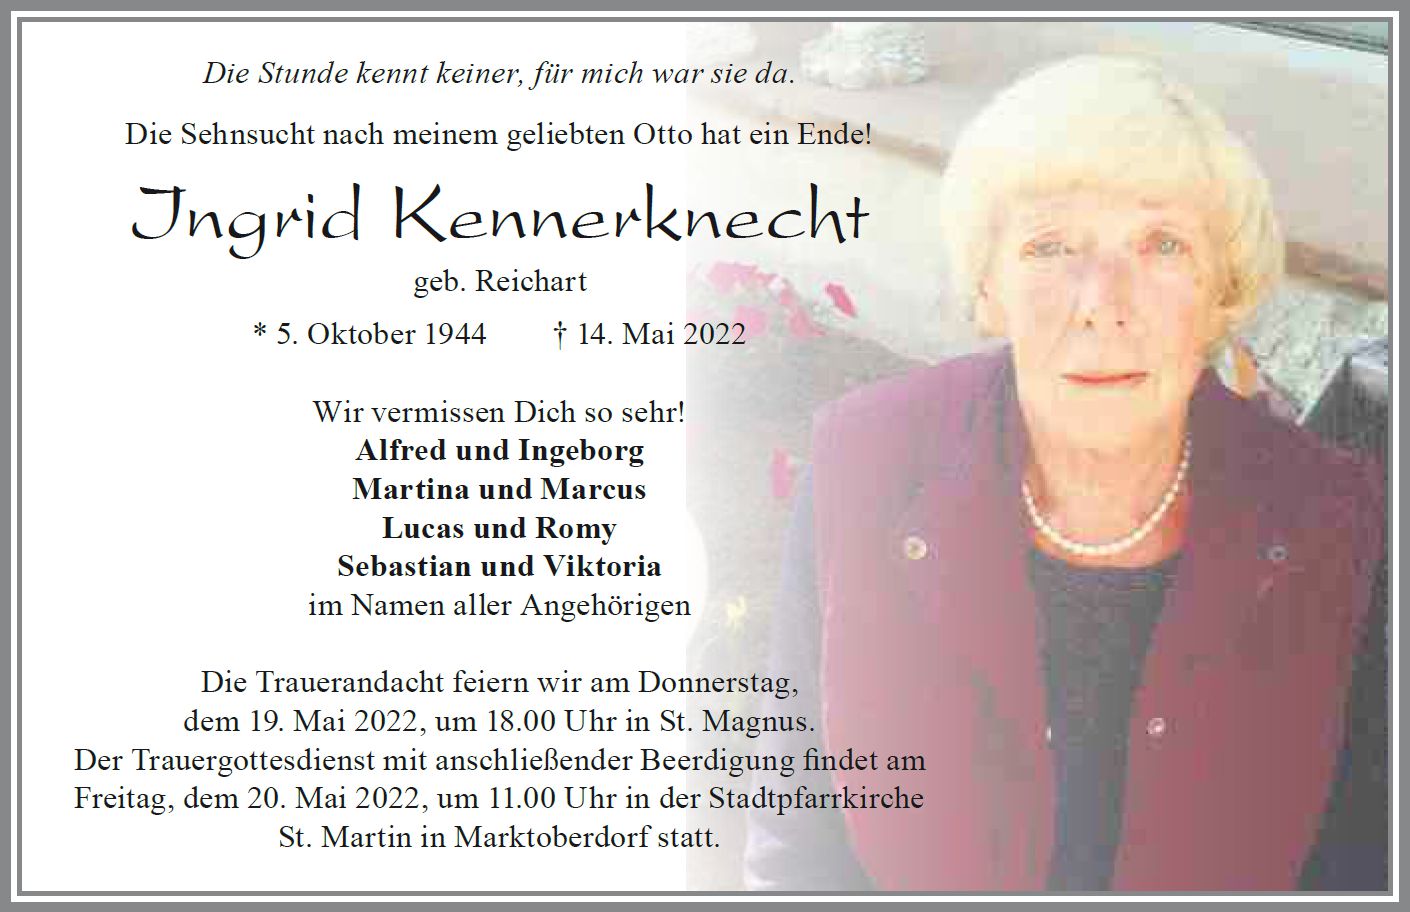 Ingrid Kennerknecht